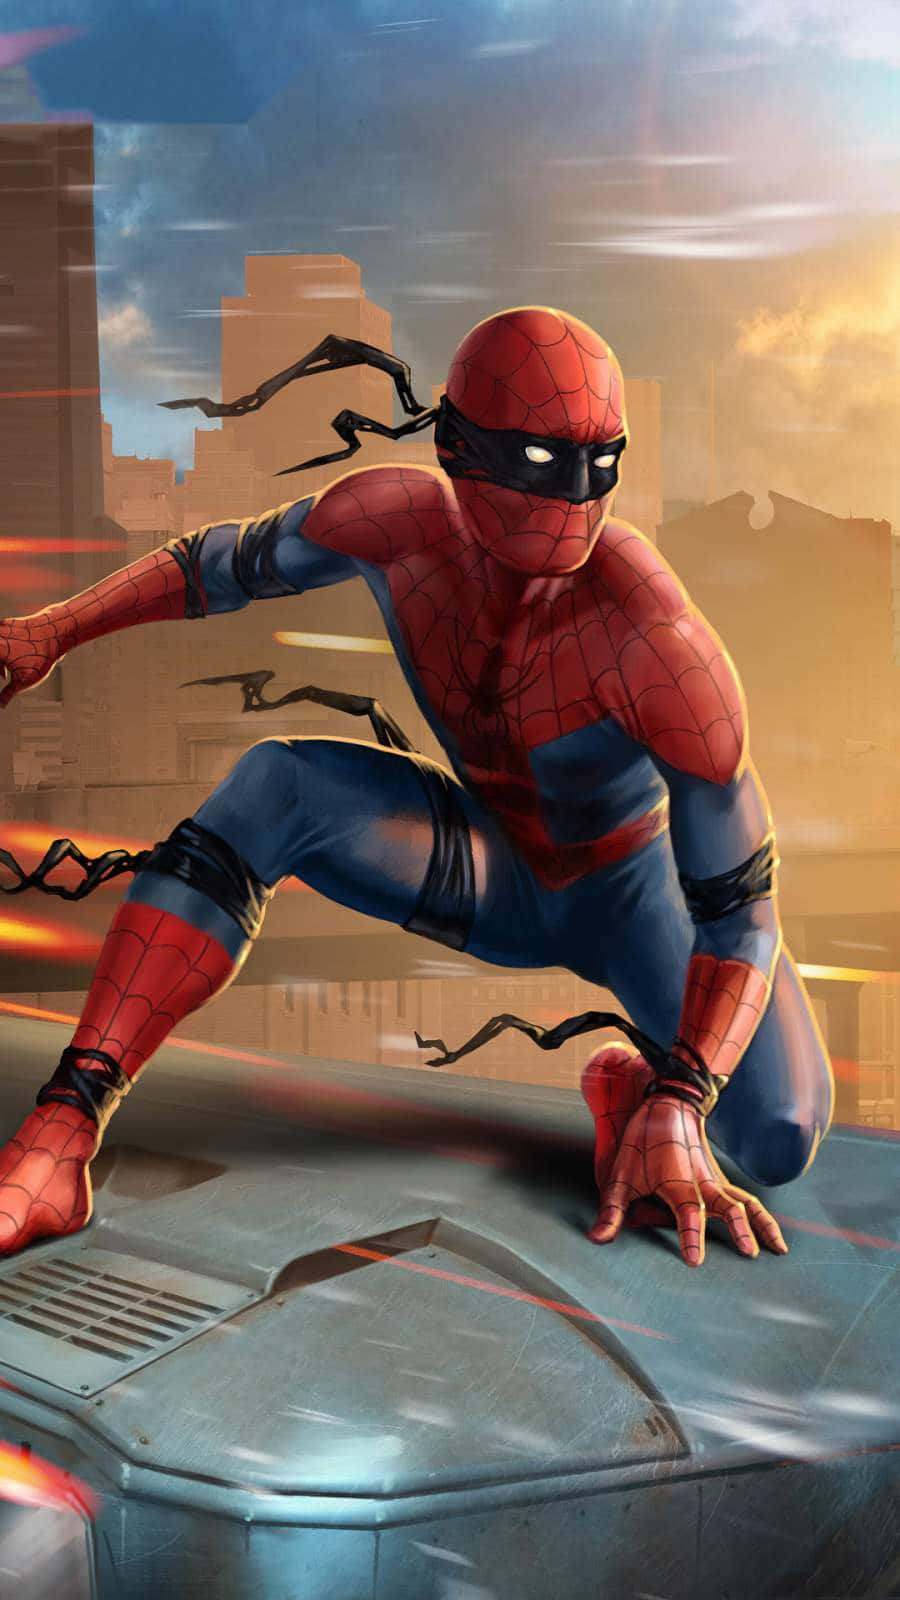 Spider Man - The Amazing Spider Man 2 Background